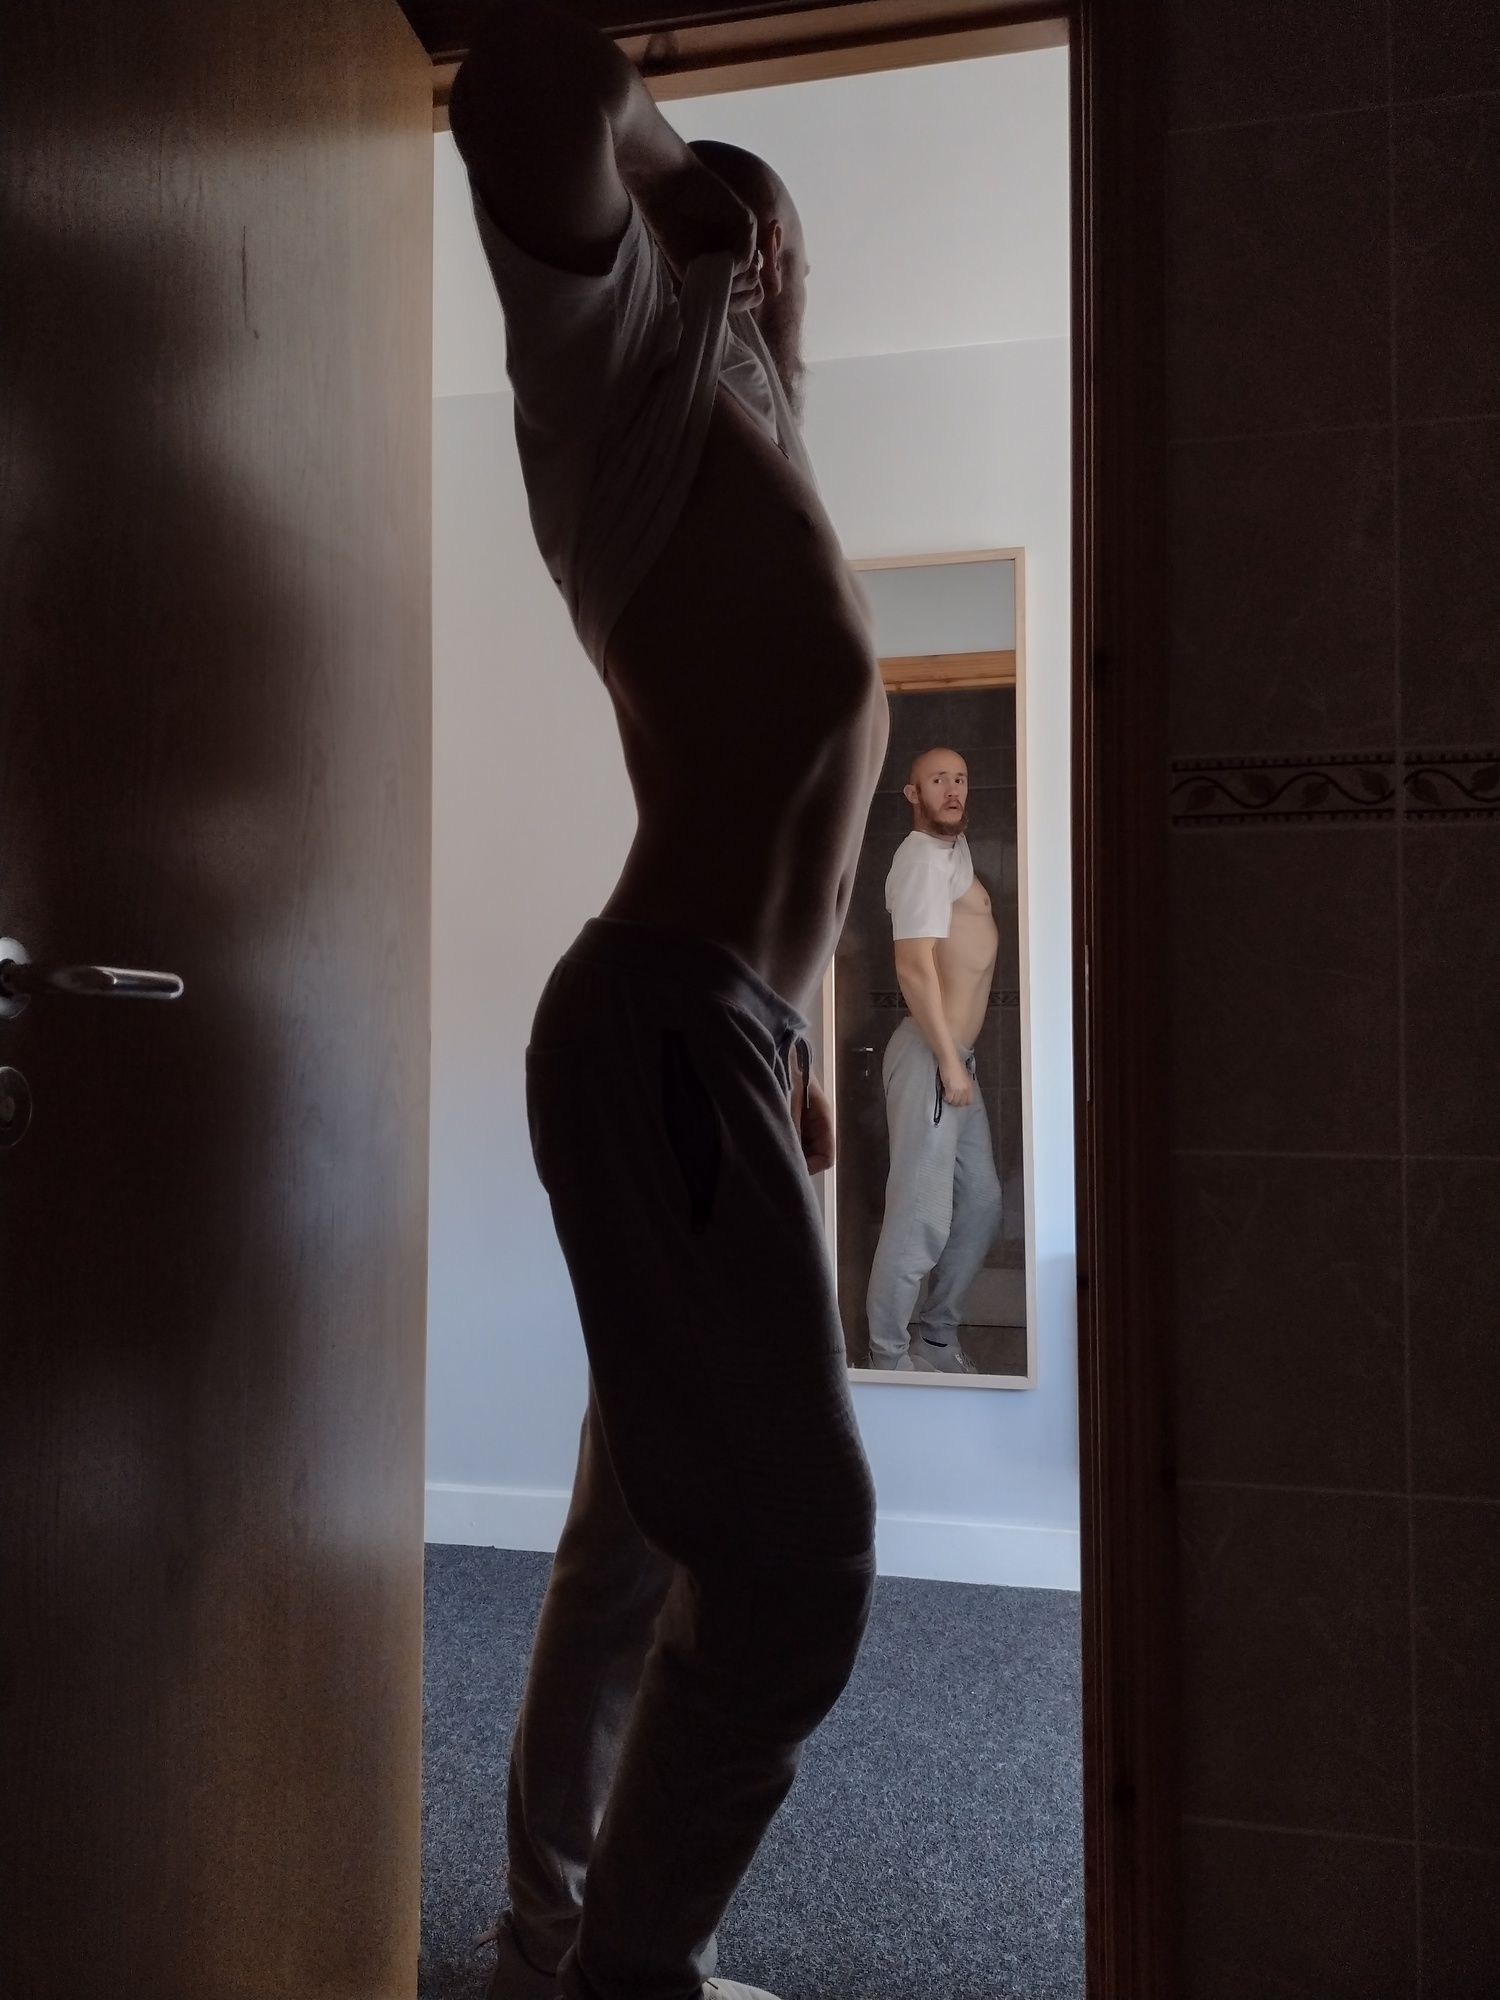 Posing nude in doorway